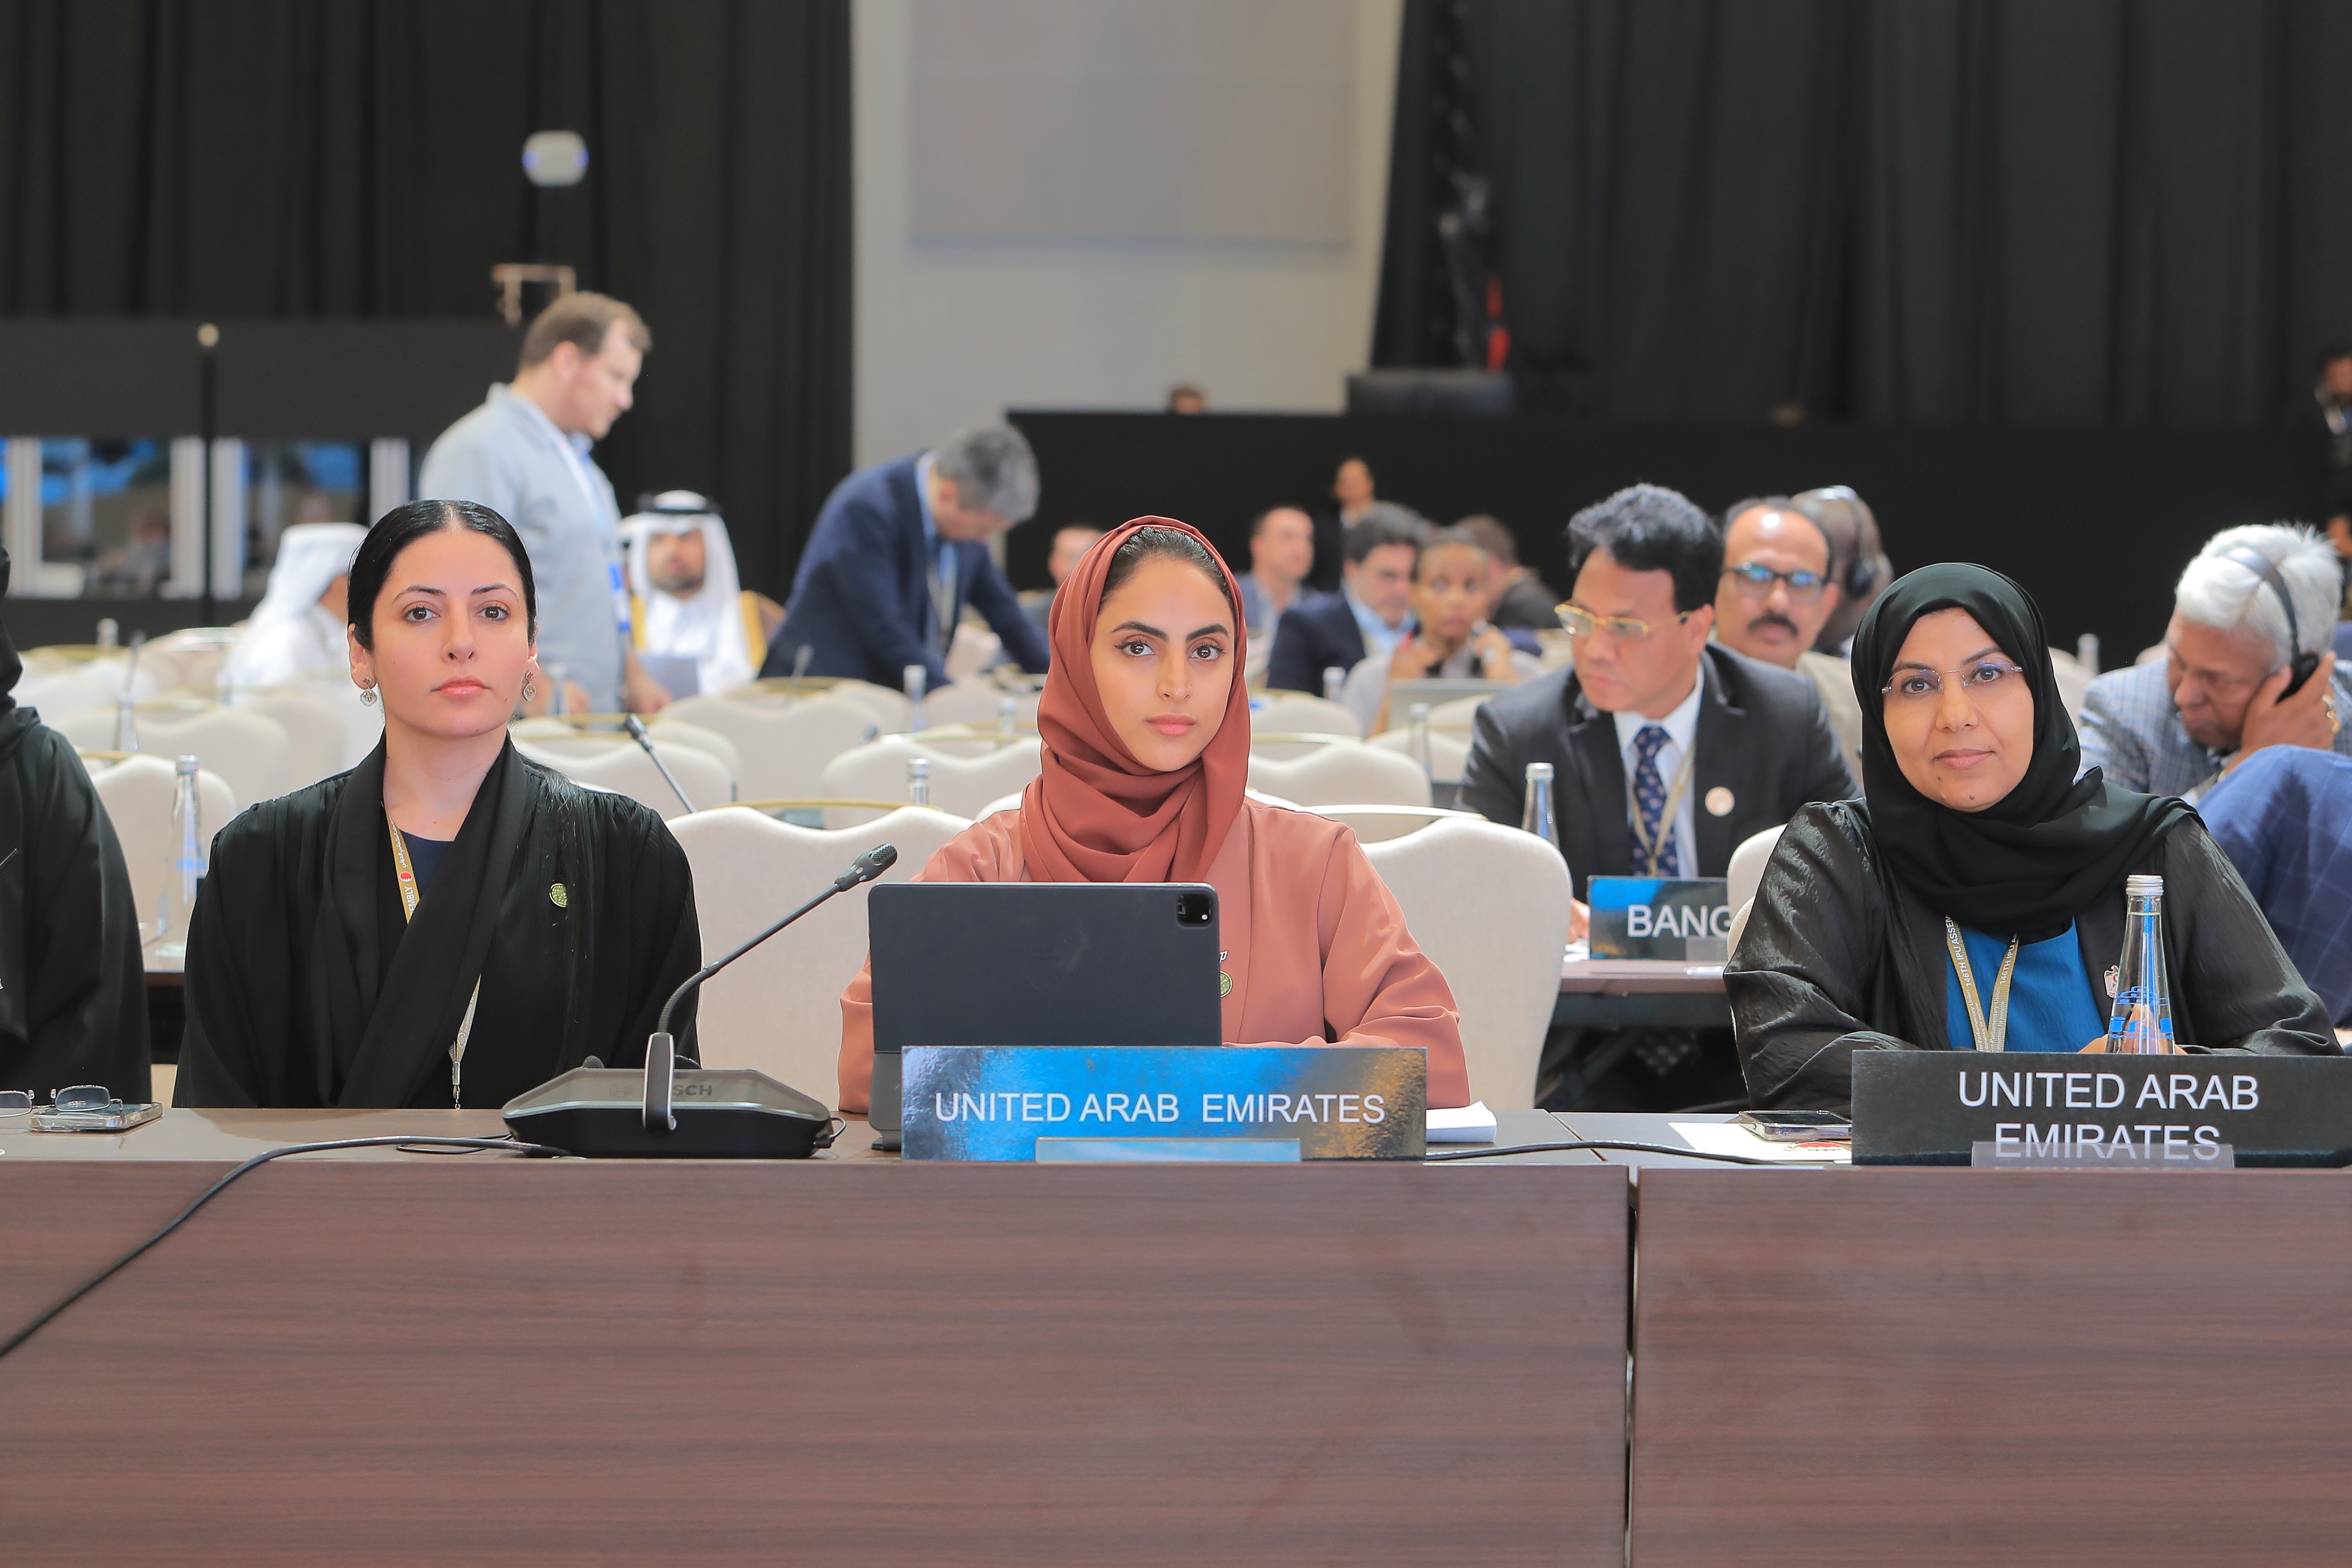 الجمعية العامة للاتحاد البرلماني الدولي توافق على المقترح الإماراتي بشأن مناقشة موضوع الشراكات من أجل العمل المناخي: تعزيز الوصول إلى الطاقة الخضراء

